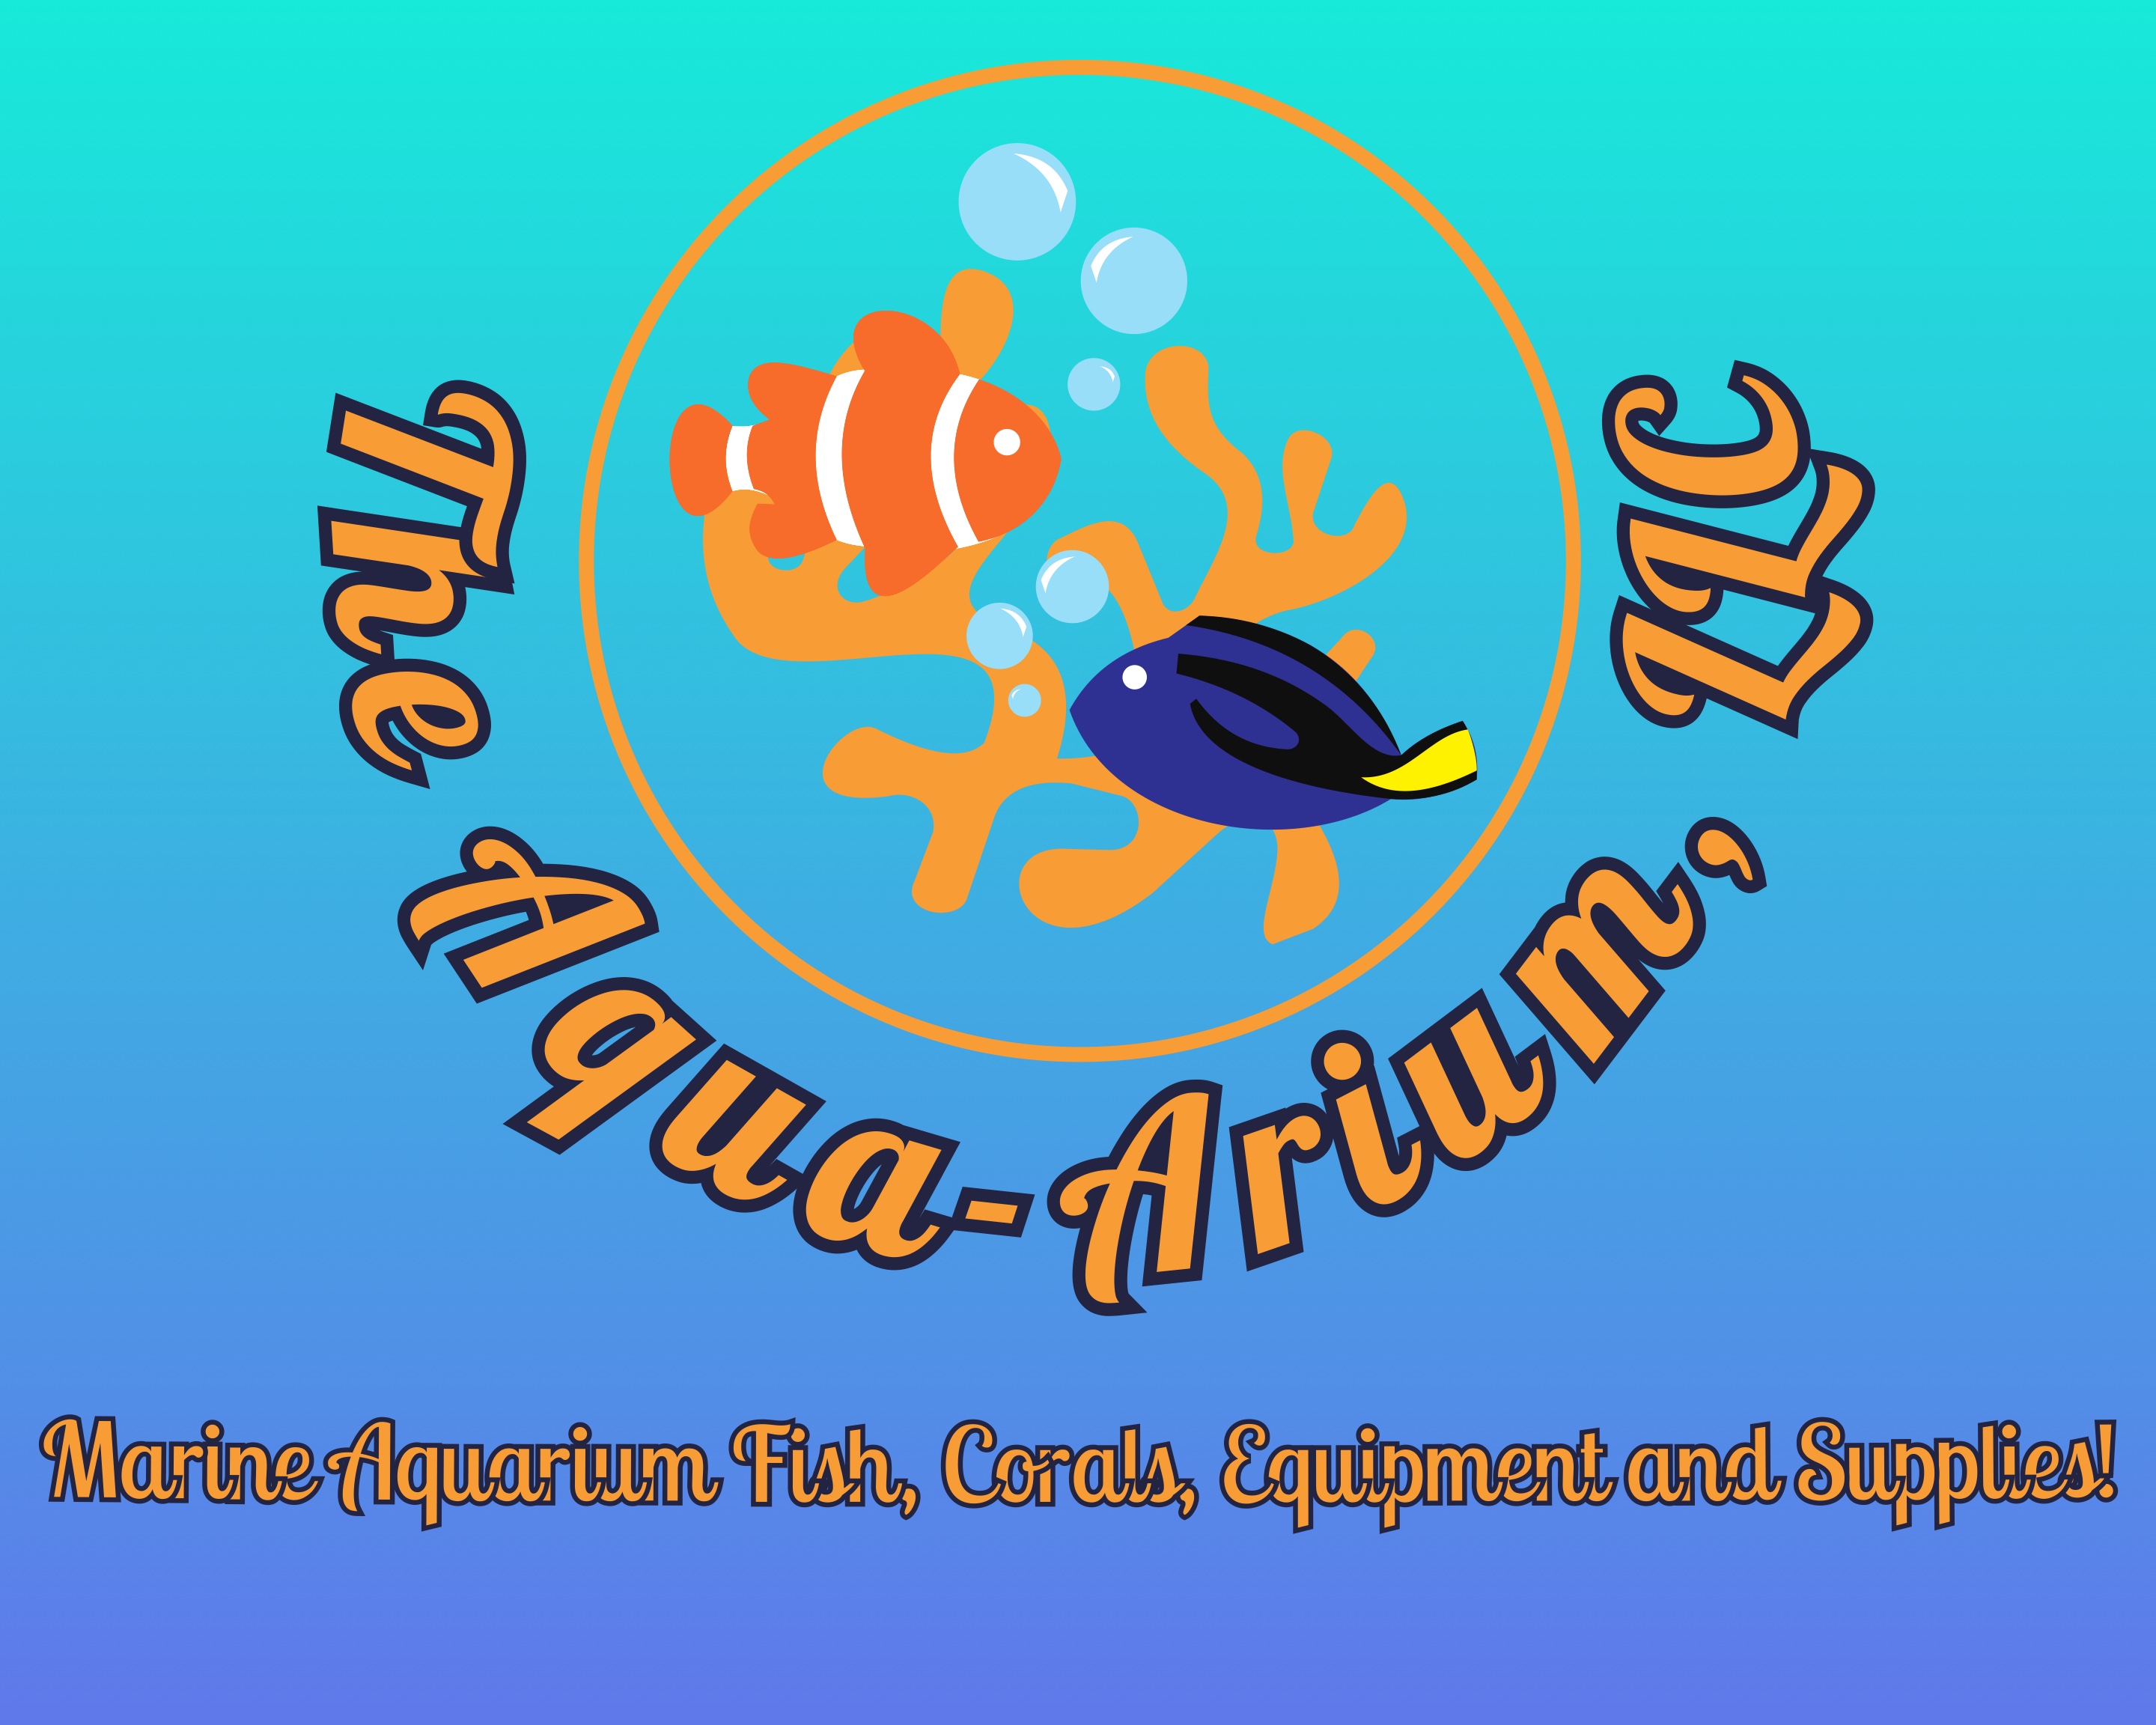 Marine Aquarium Equipment & Accessories